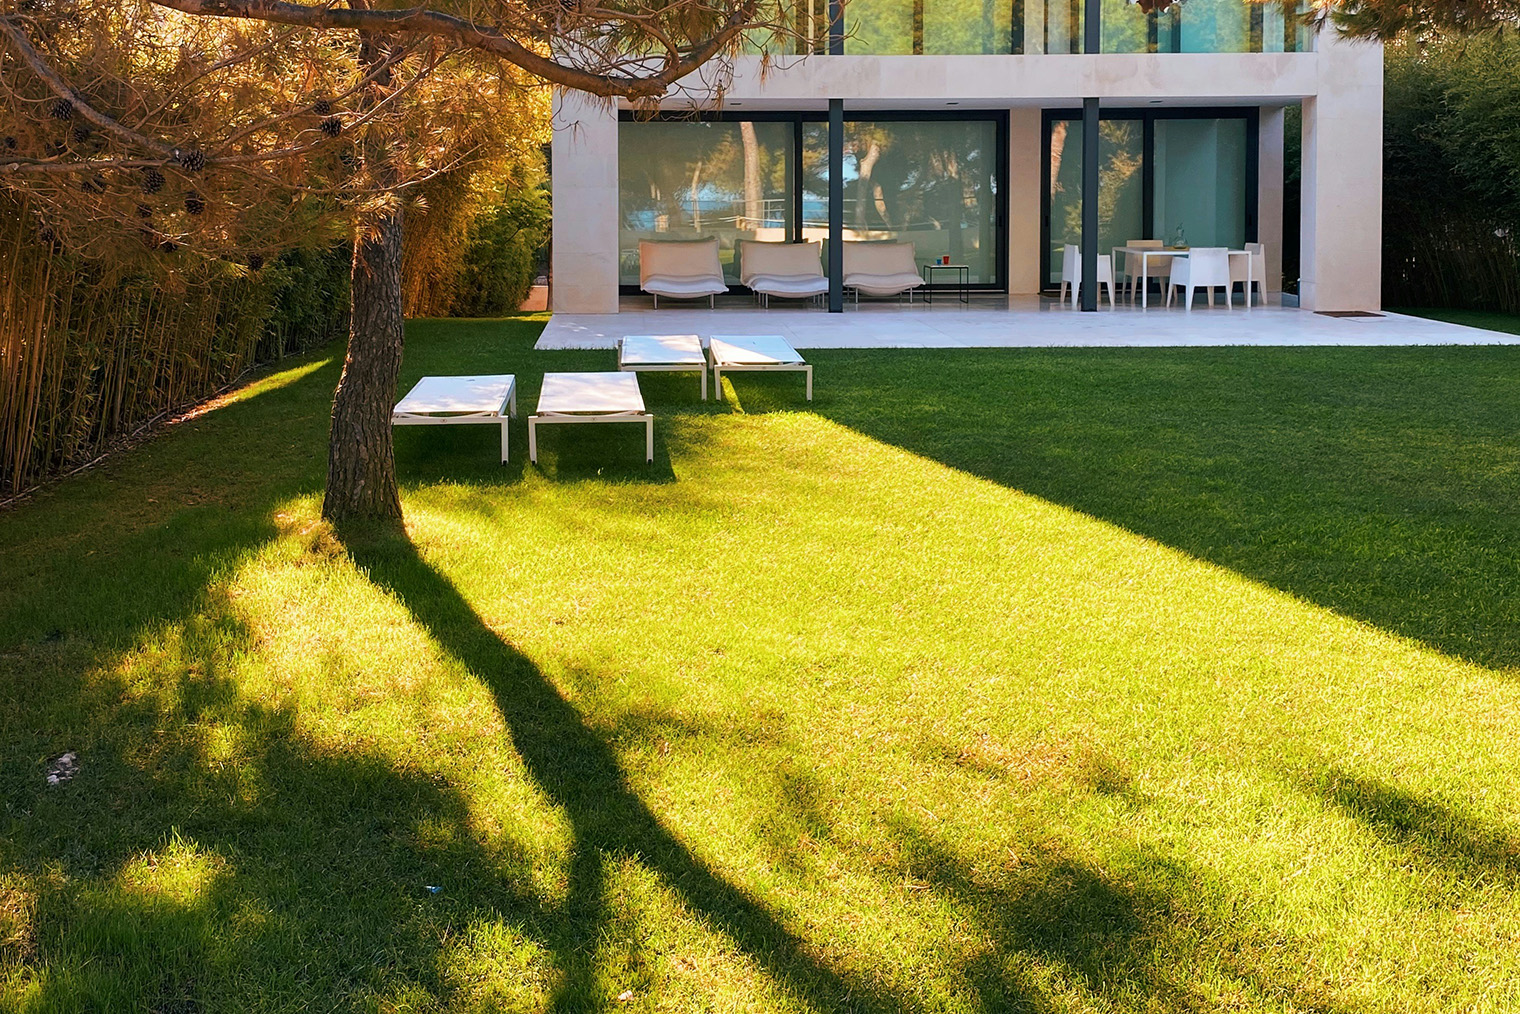 Визуально газон хорошо дополняет здания в стиле минимализм. Такое решение популярное, но не делает участок малоуходным. Фотография: Alejandra Cifre González / Unsplash